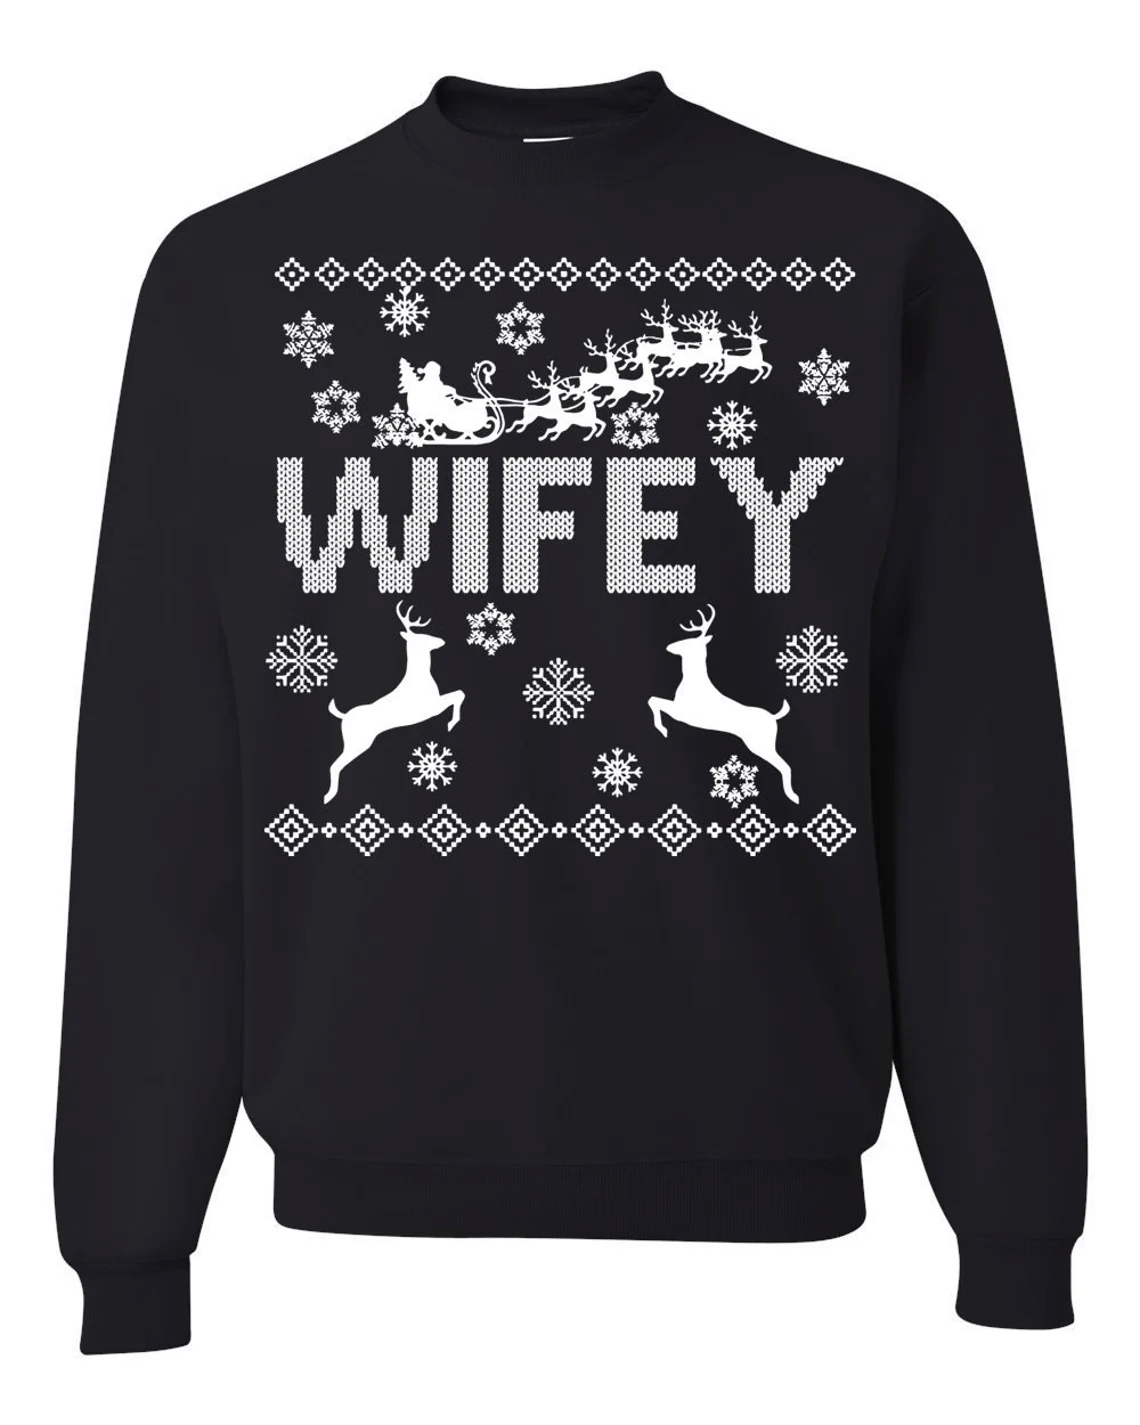 Hubby Wifey Couple Matching Christmas Sweatshirt Style: Wifey, Color: Black